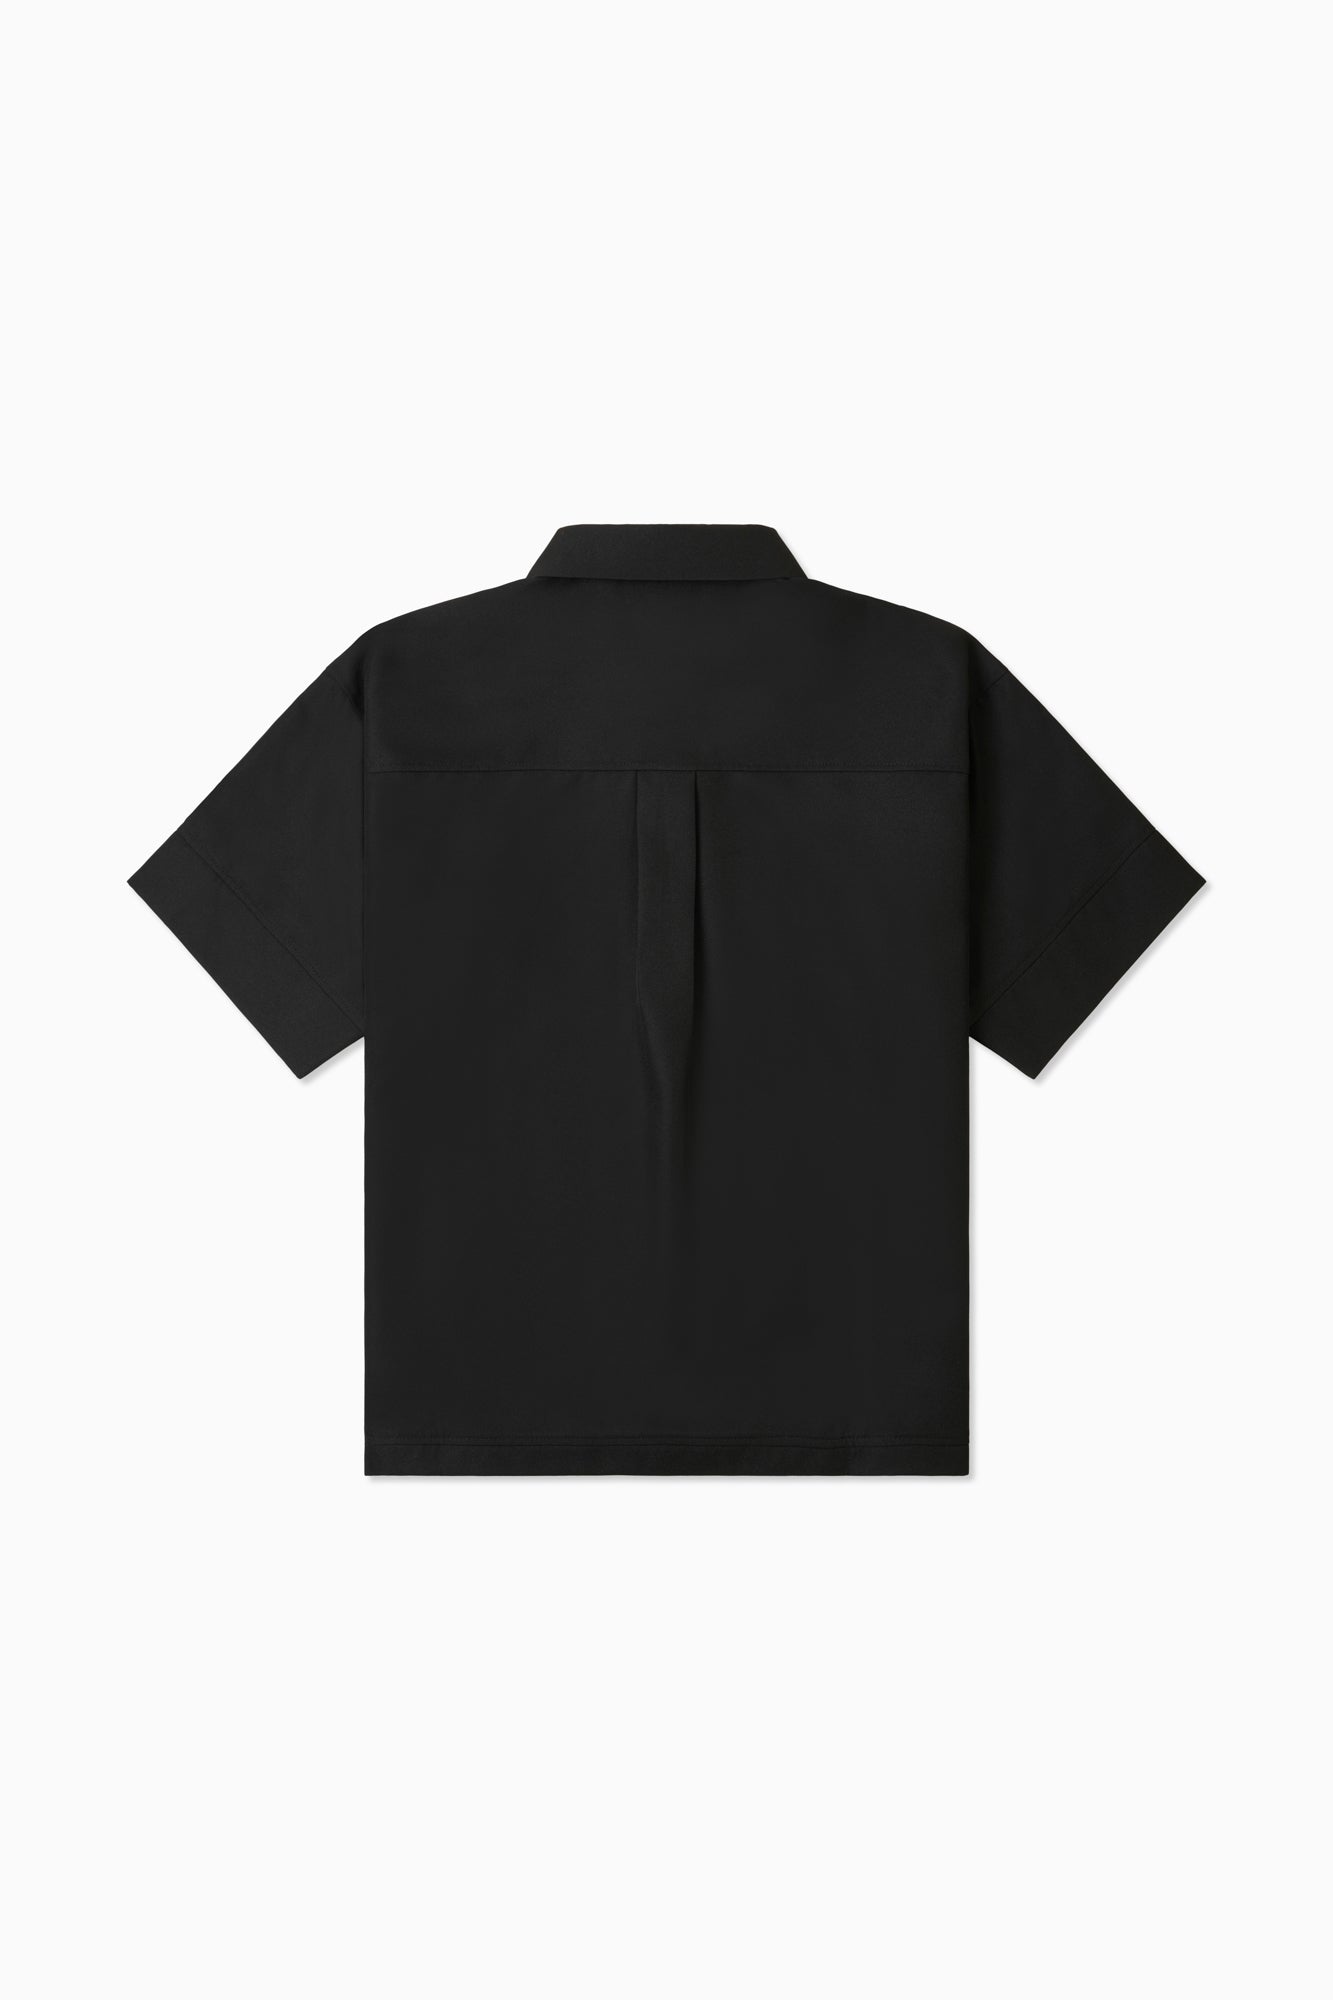 2-Way Formal Change Shirt - Black